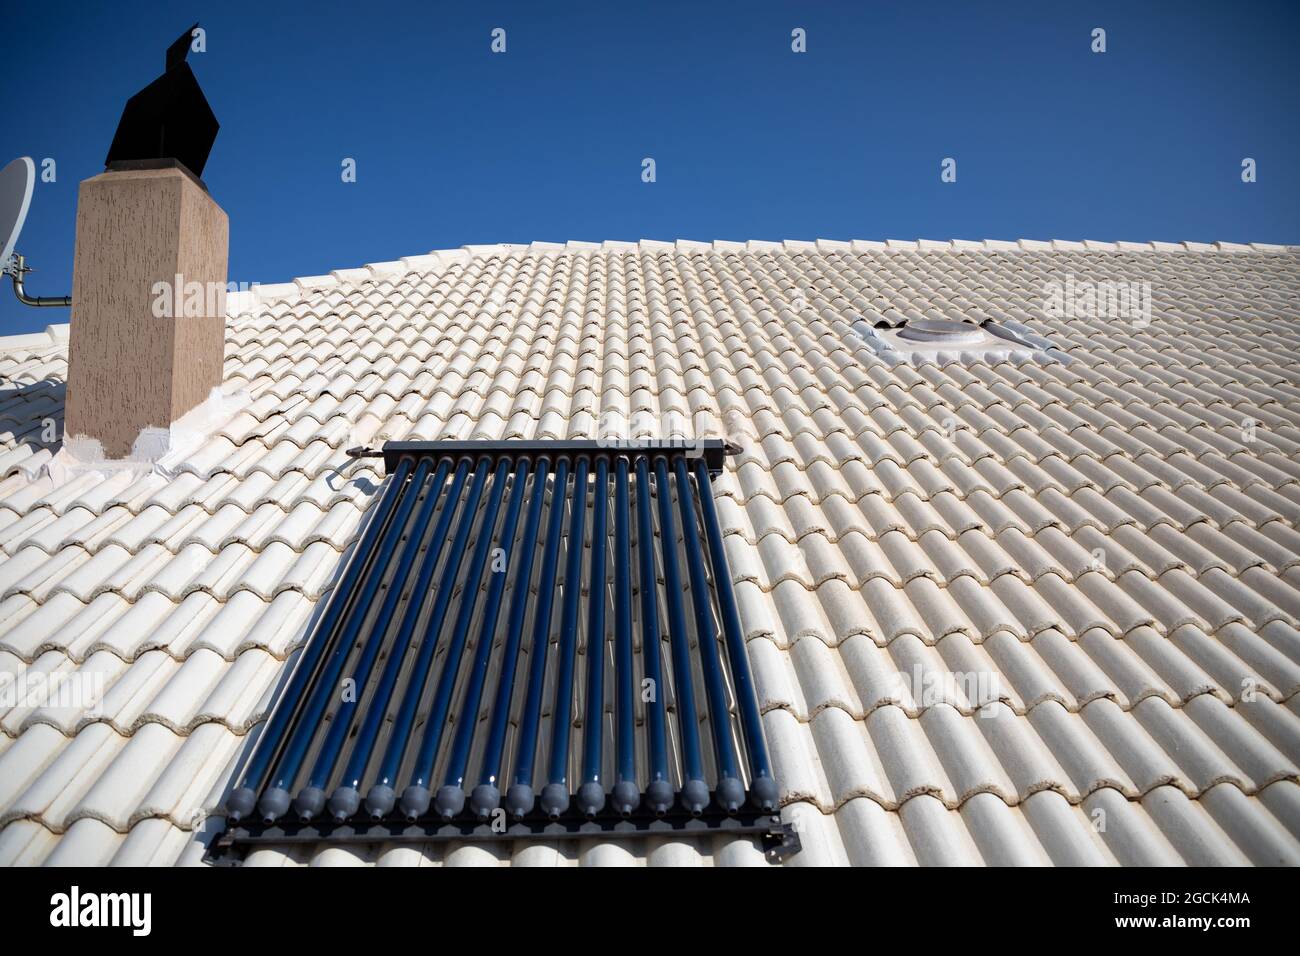 Das geflieste Dach ist weiß gestrichen, um die Hitze der Sonne abzulenken. Solar evakuierte Rohre, um Wasser ohne Energieverbrauch zu erhitzen. Stockfoto